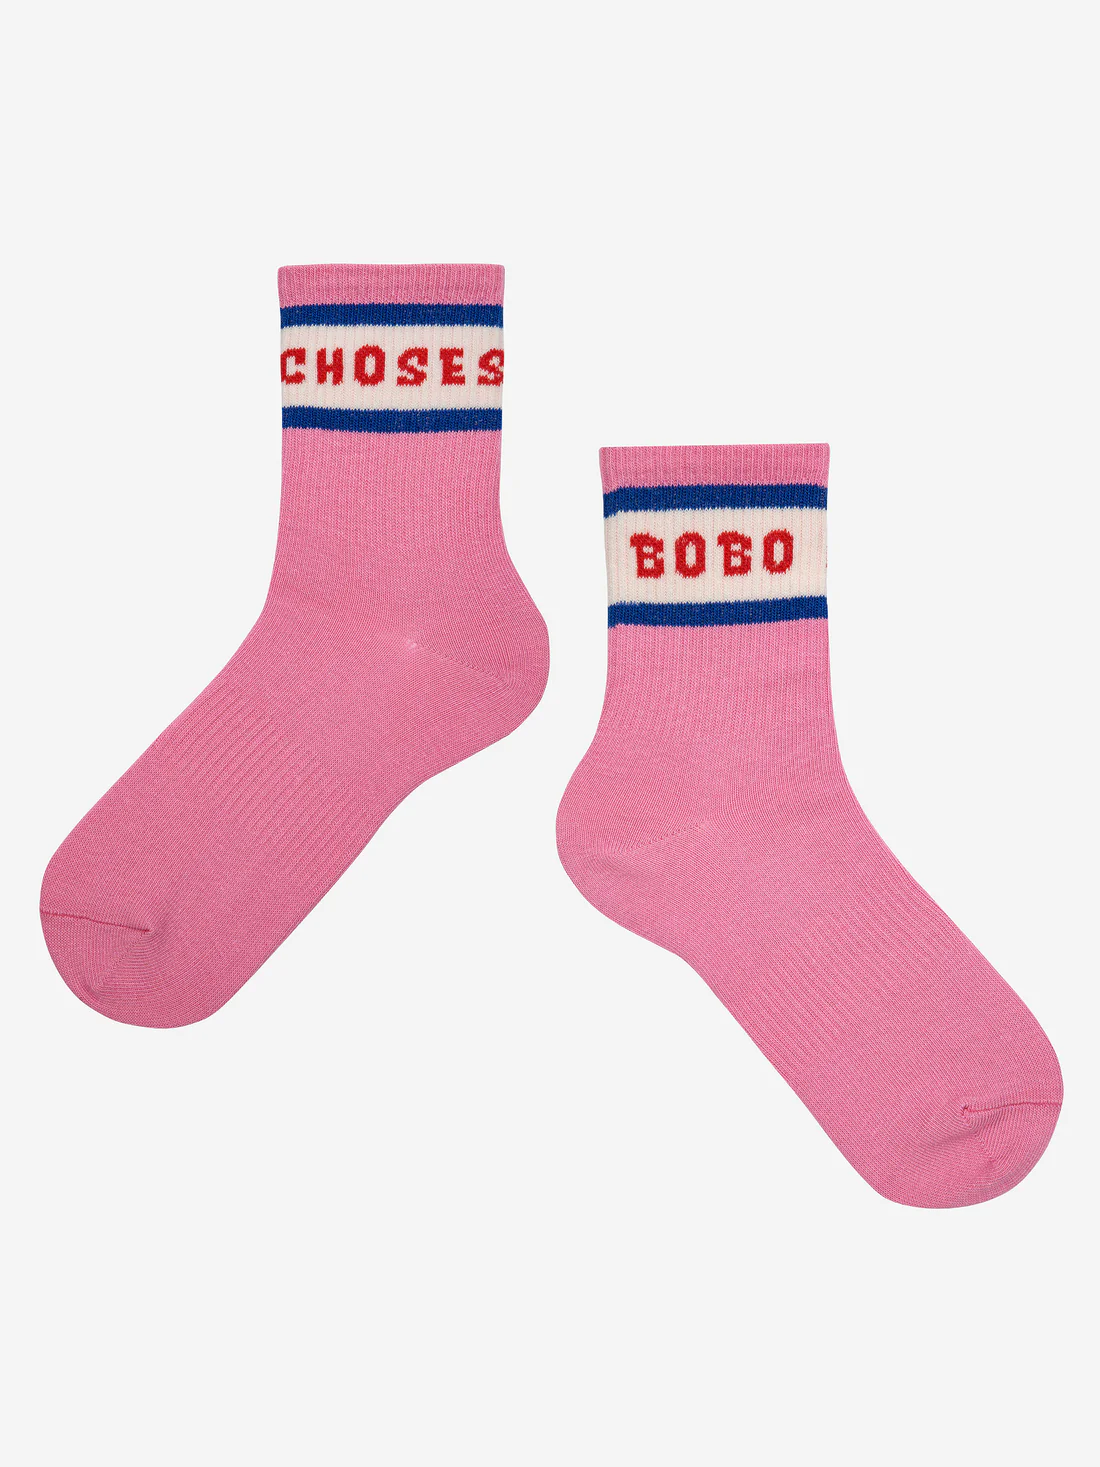 Bobo Choses short Socken